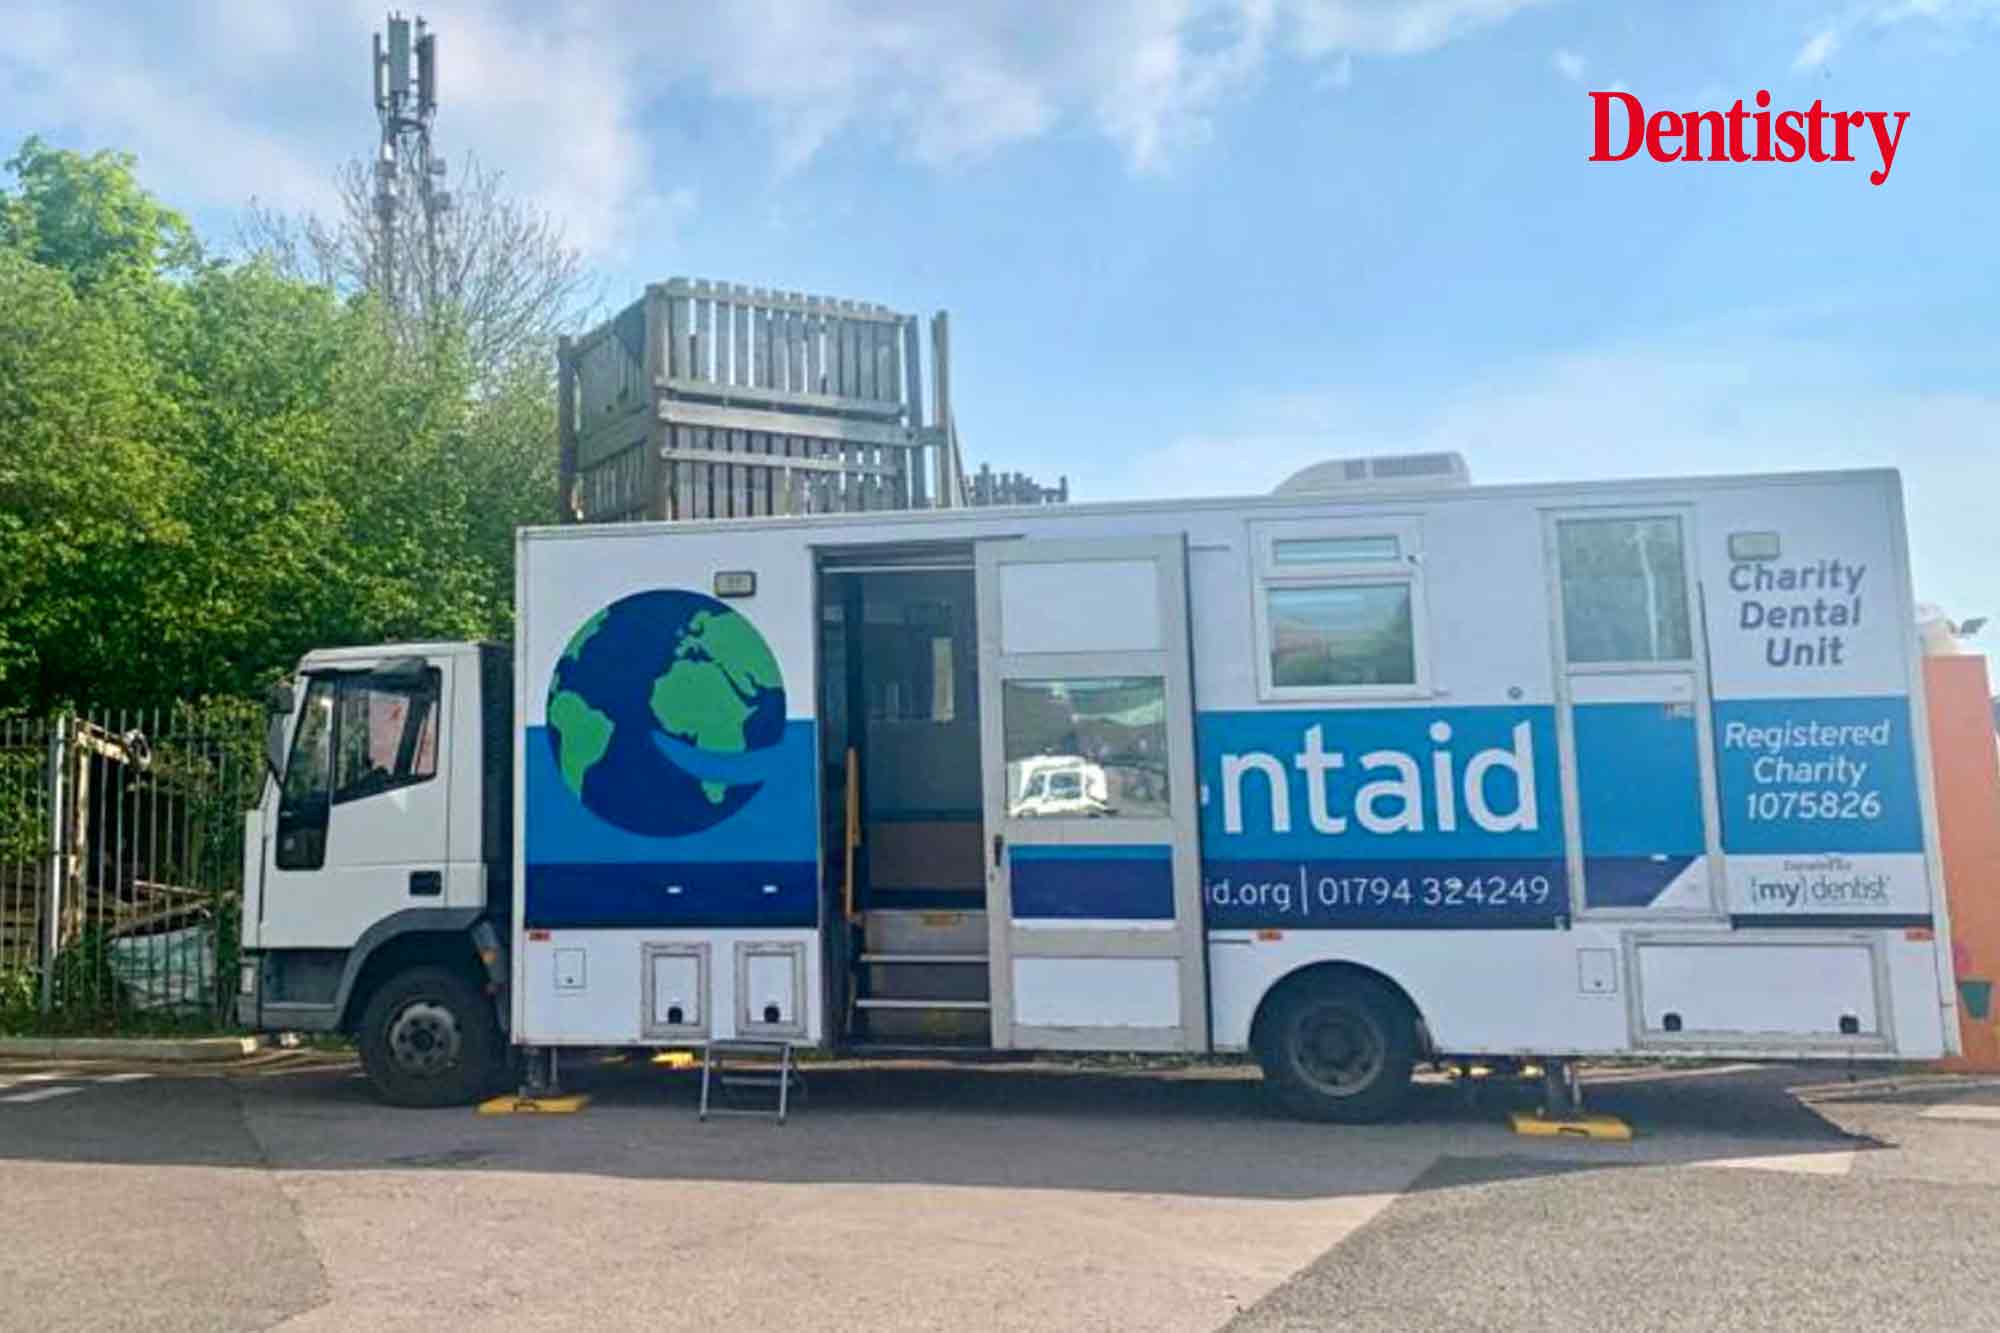 Dentaid kicks off urgent mobile dental unit appeal